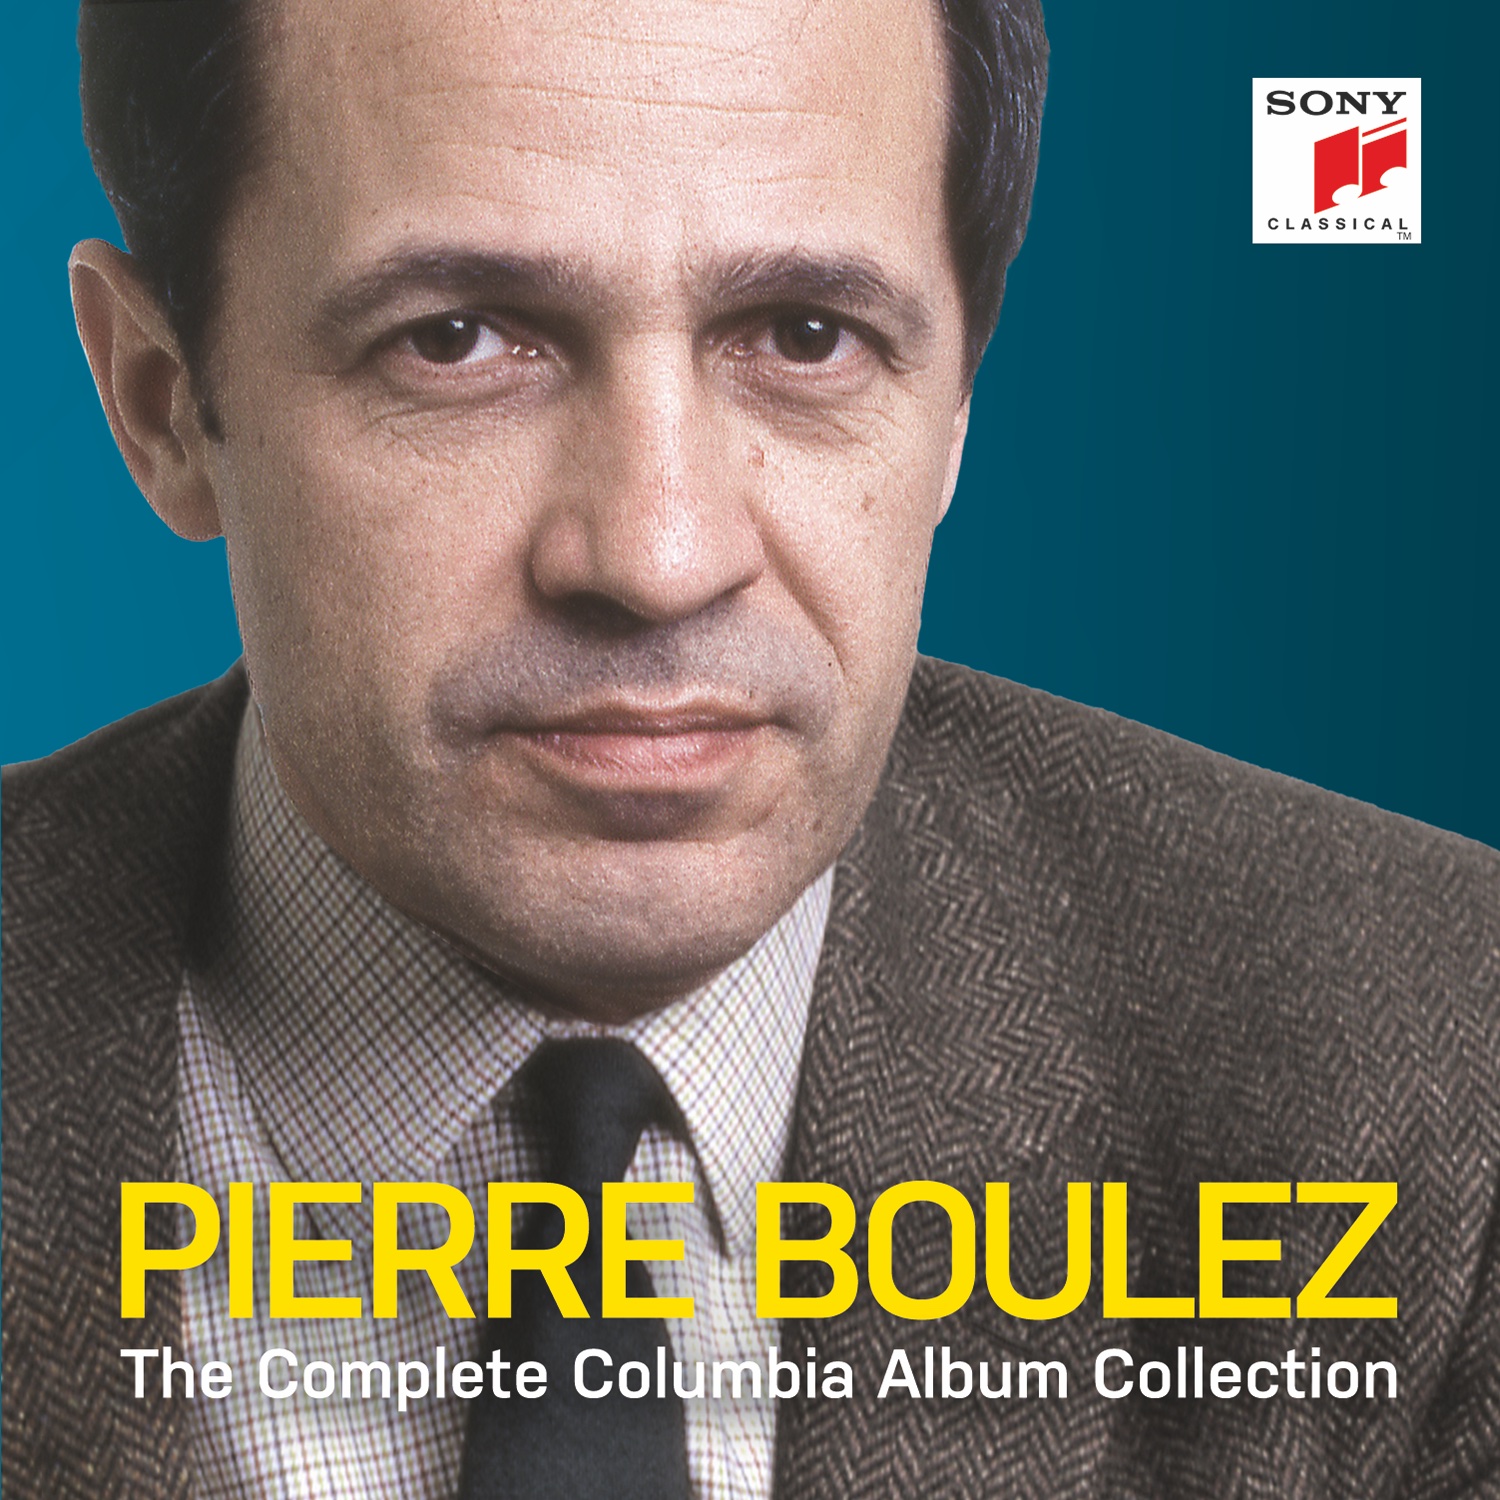 Pierre Boulez - Pierre Boulez - The Complete Columbia Album Collection